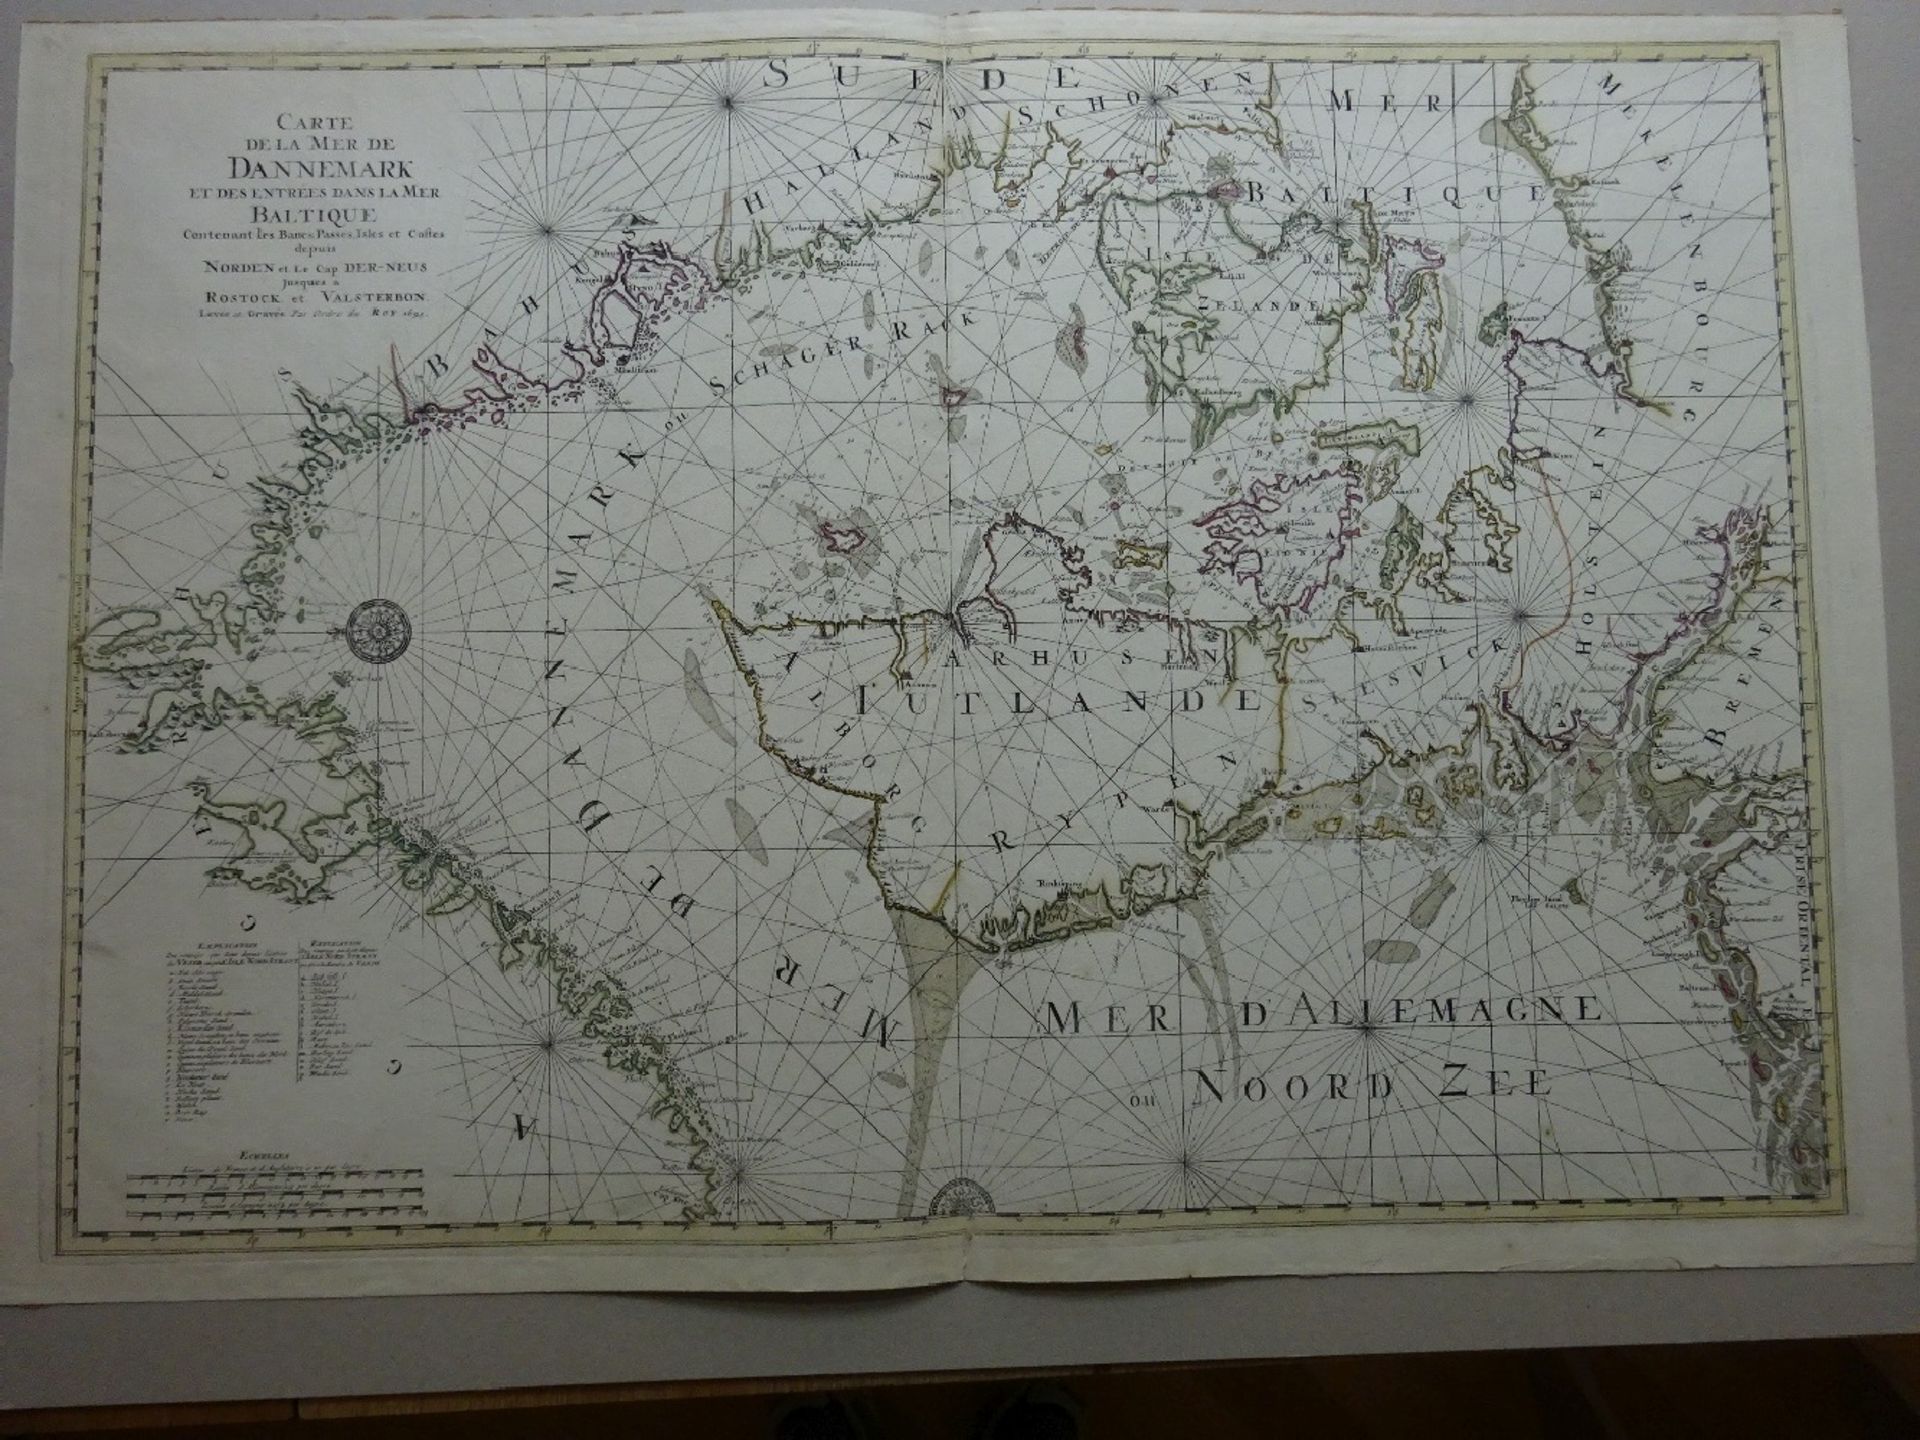 Carte de la Mer de Dannemark - Image 2 of 7